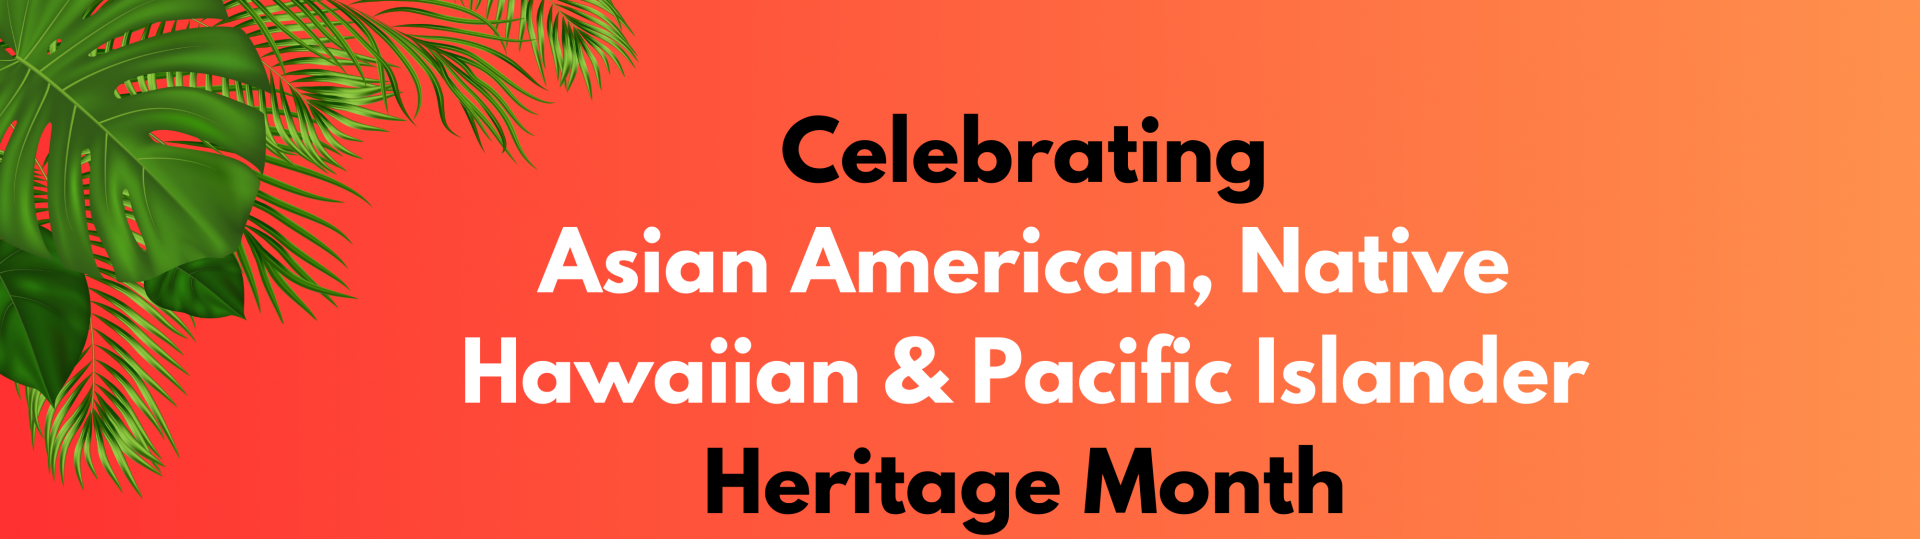 Celebrating AANHPI Heritage Month